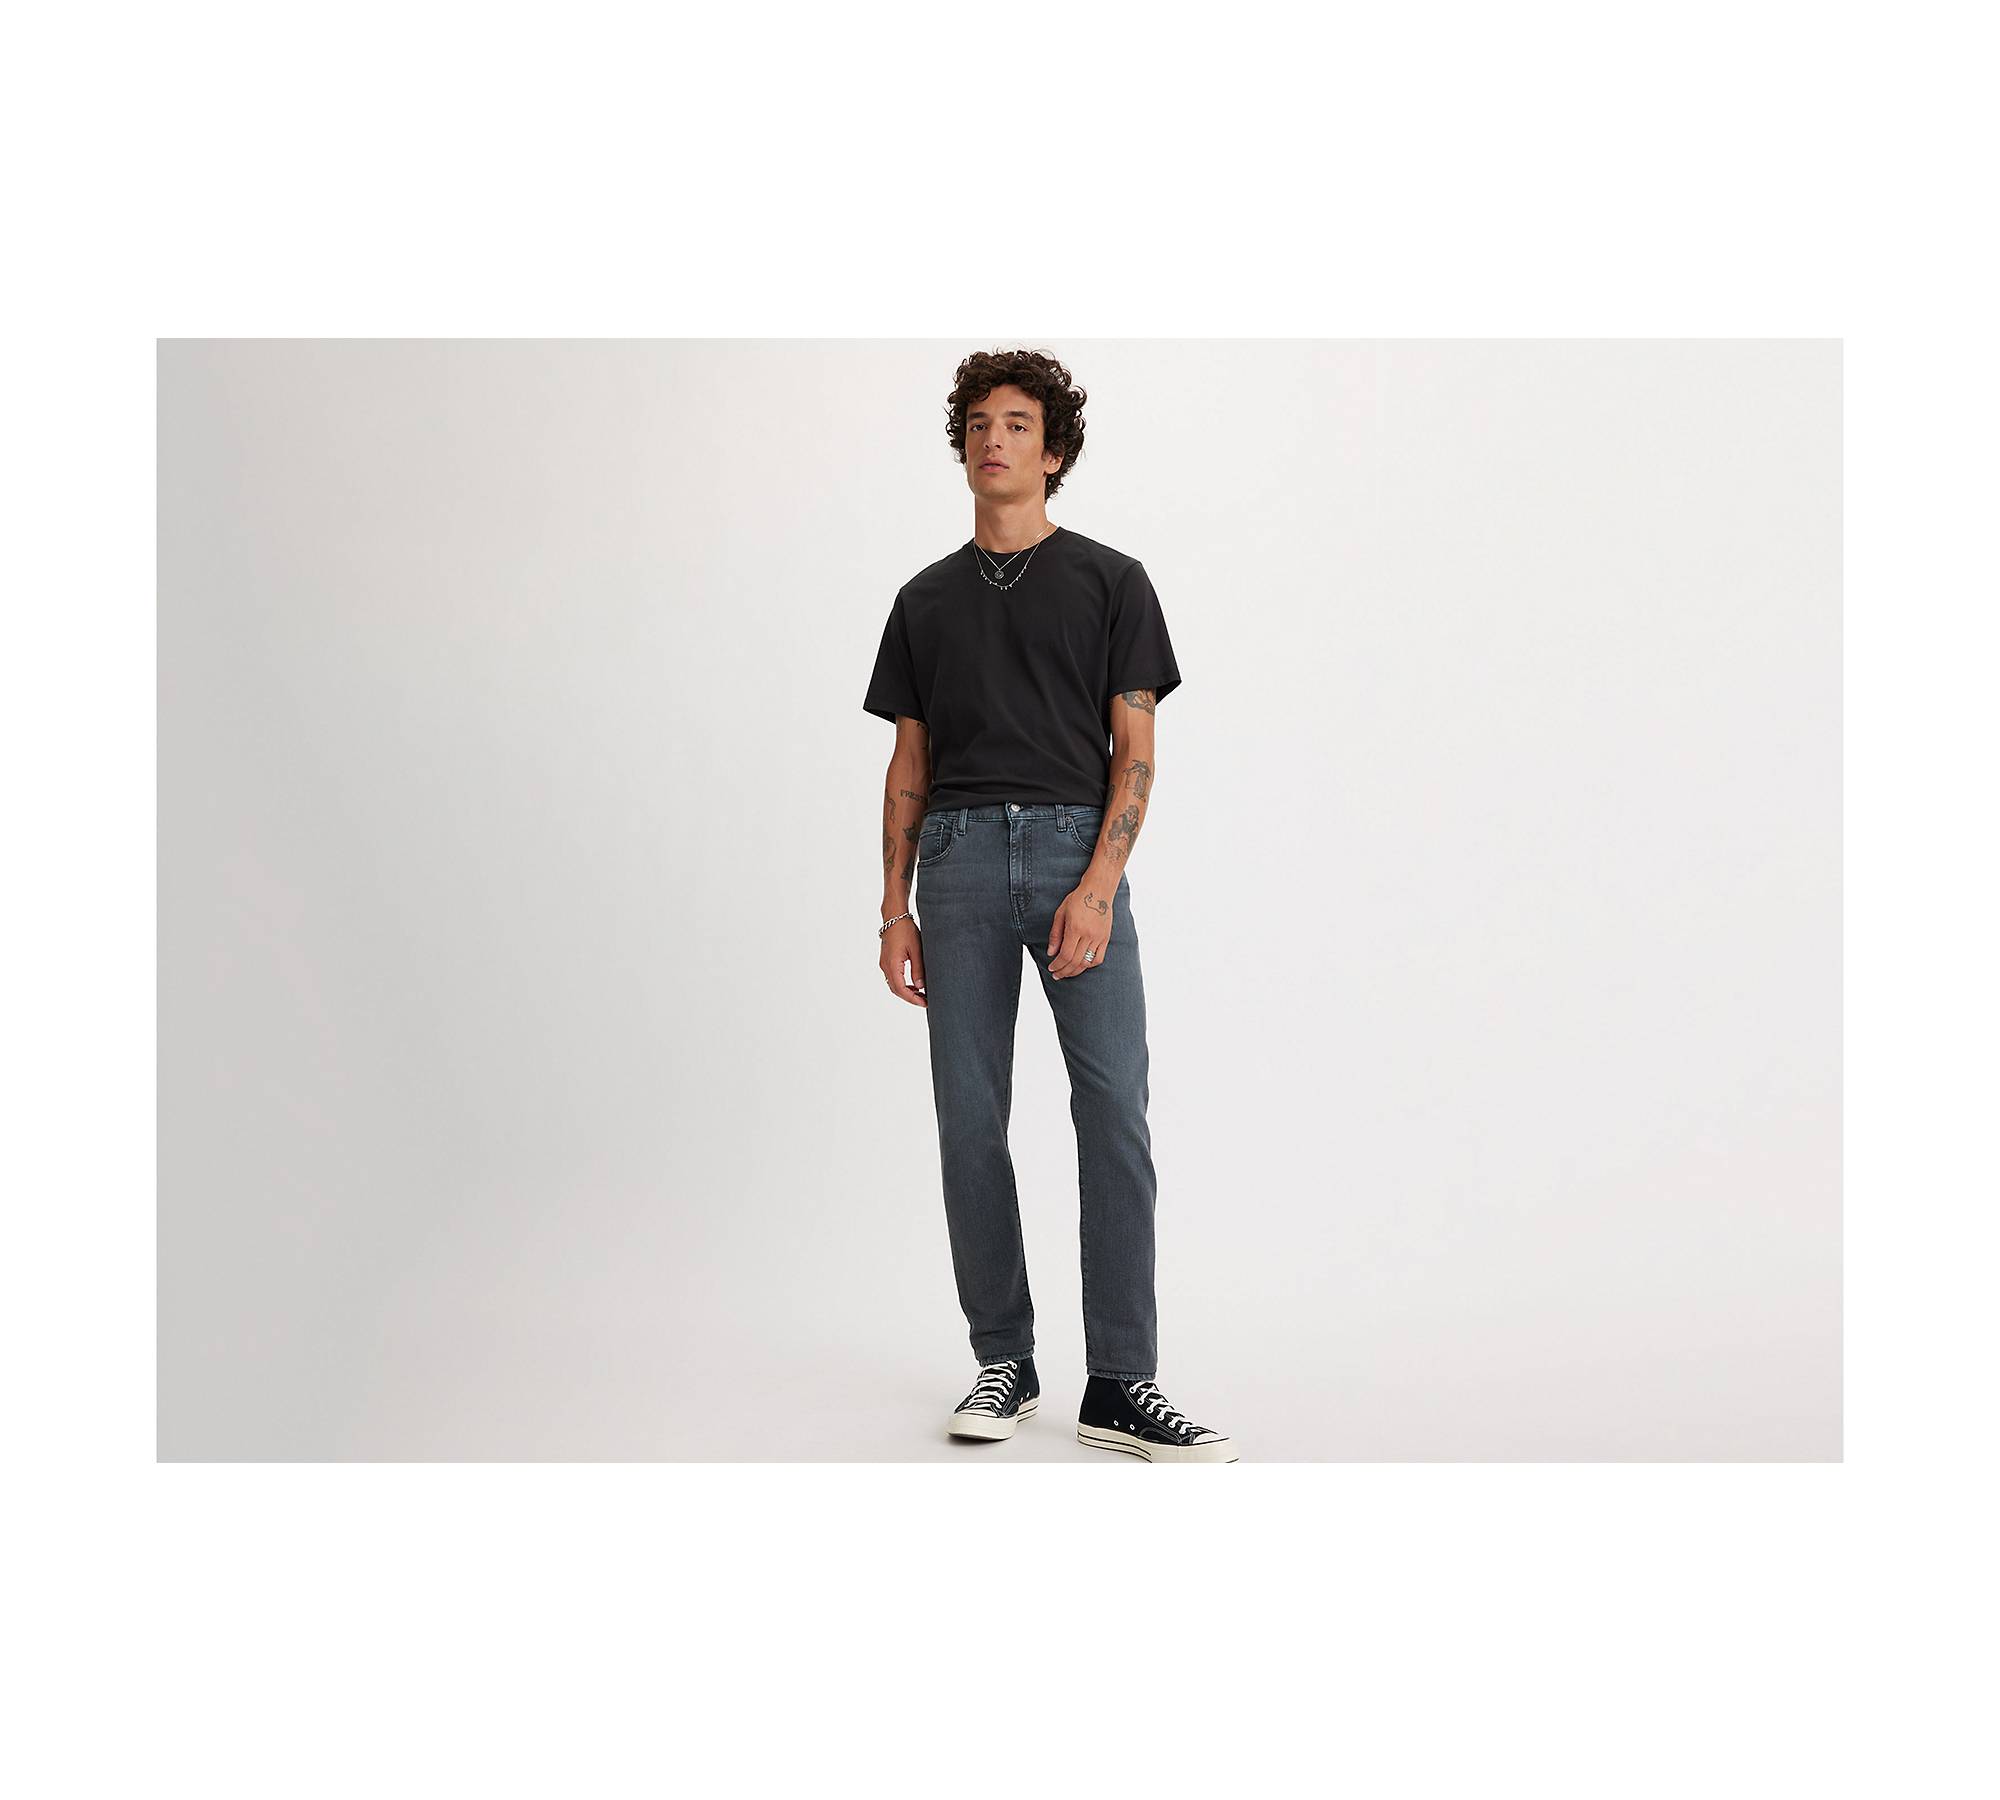 Levi's 512 slim taper jeans in dark navy wash